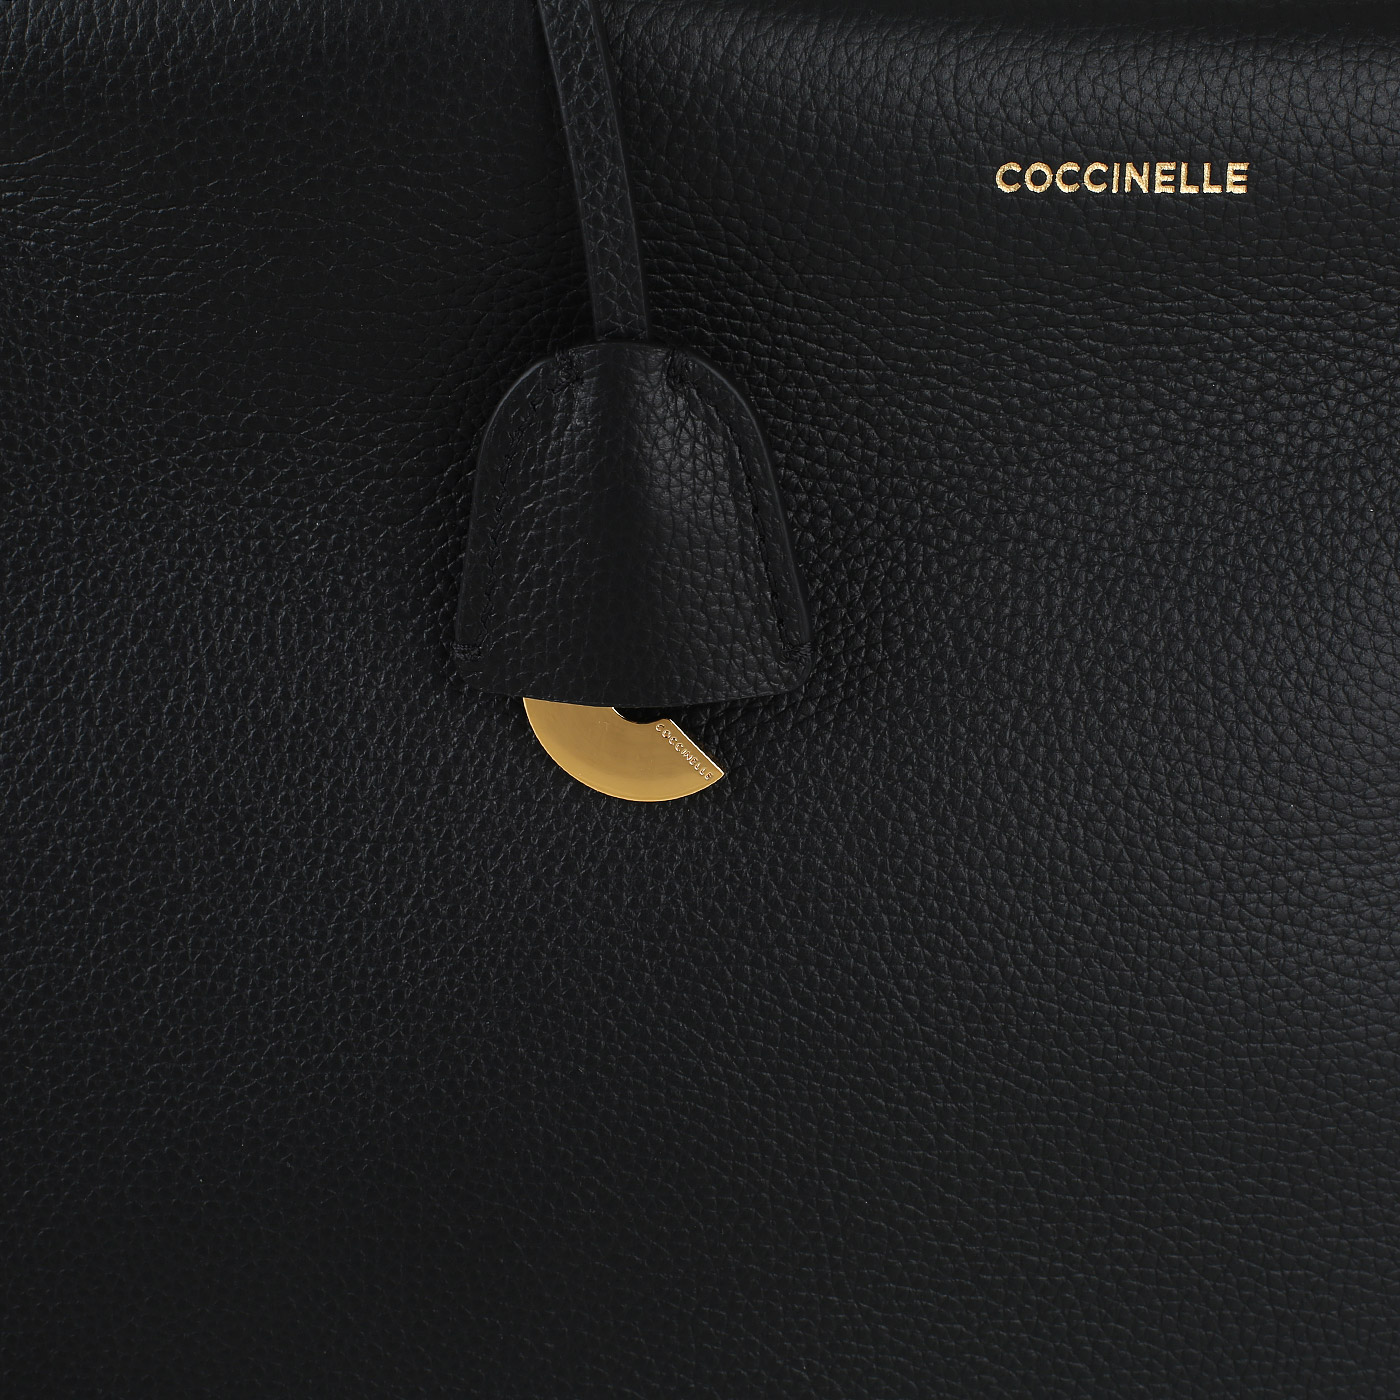 Кожаная сумка Coccinelle CoccinelleBlue